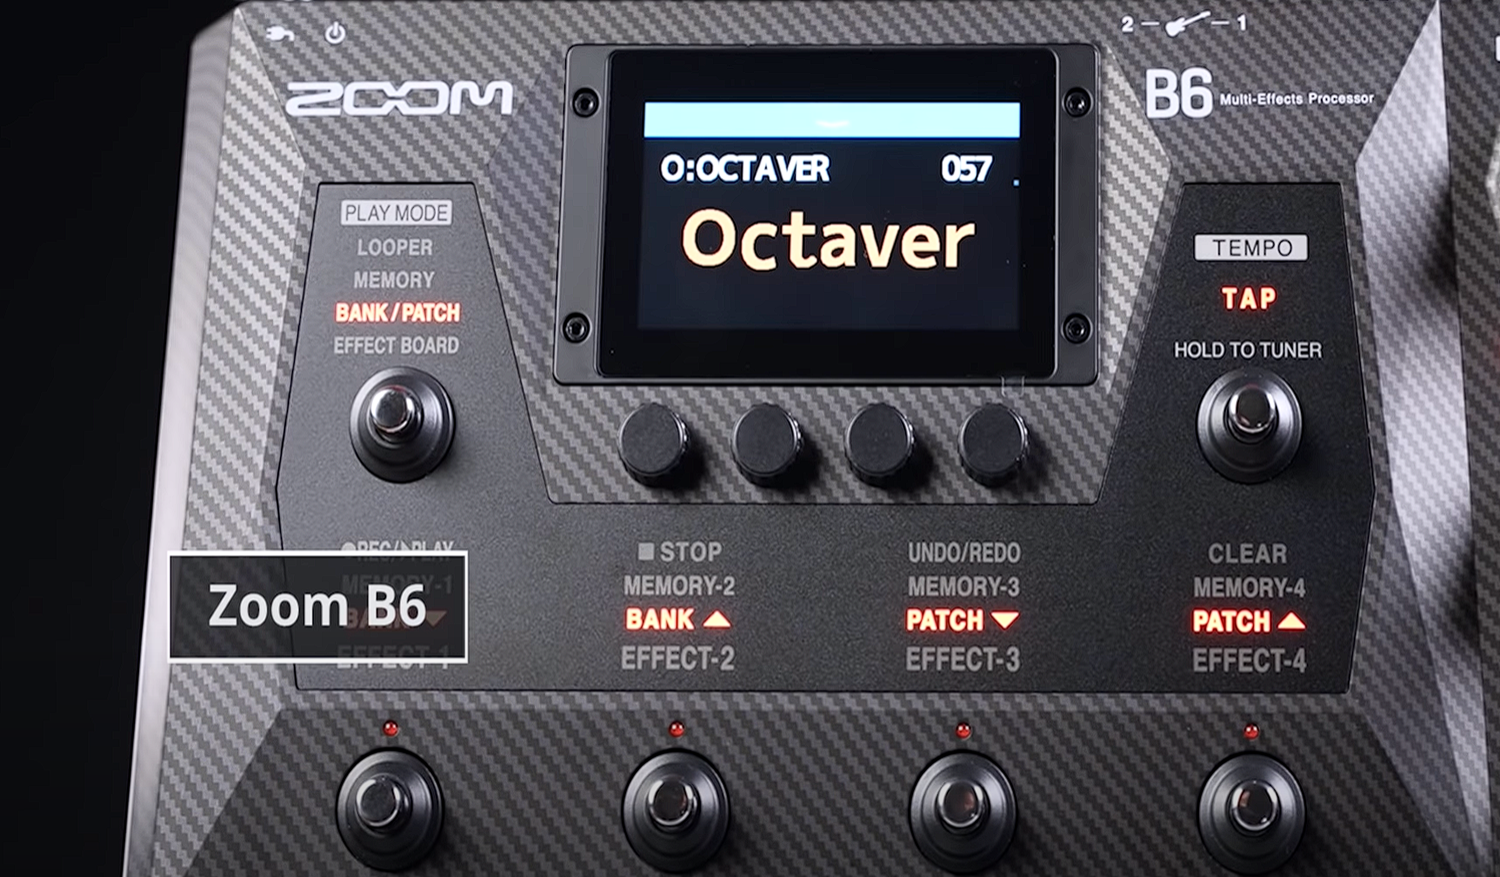 Процессор мультиэффектов для бас-гитары B6. Уже в продаже!